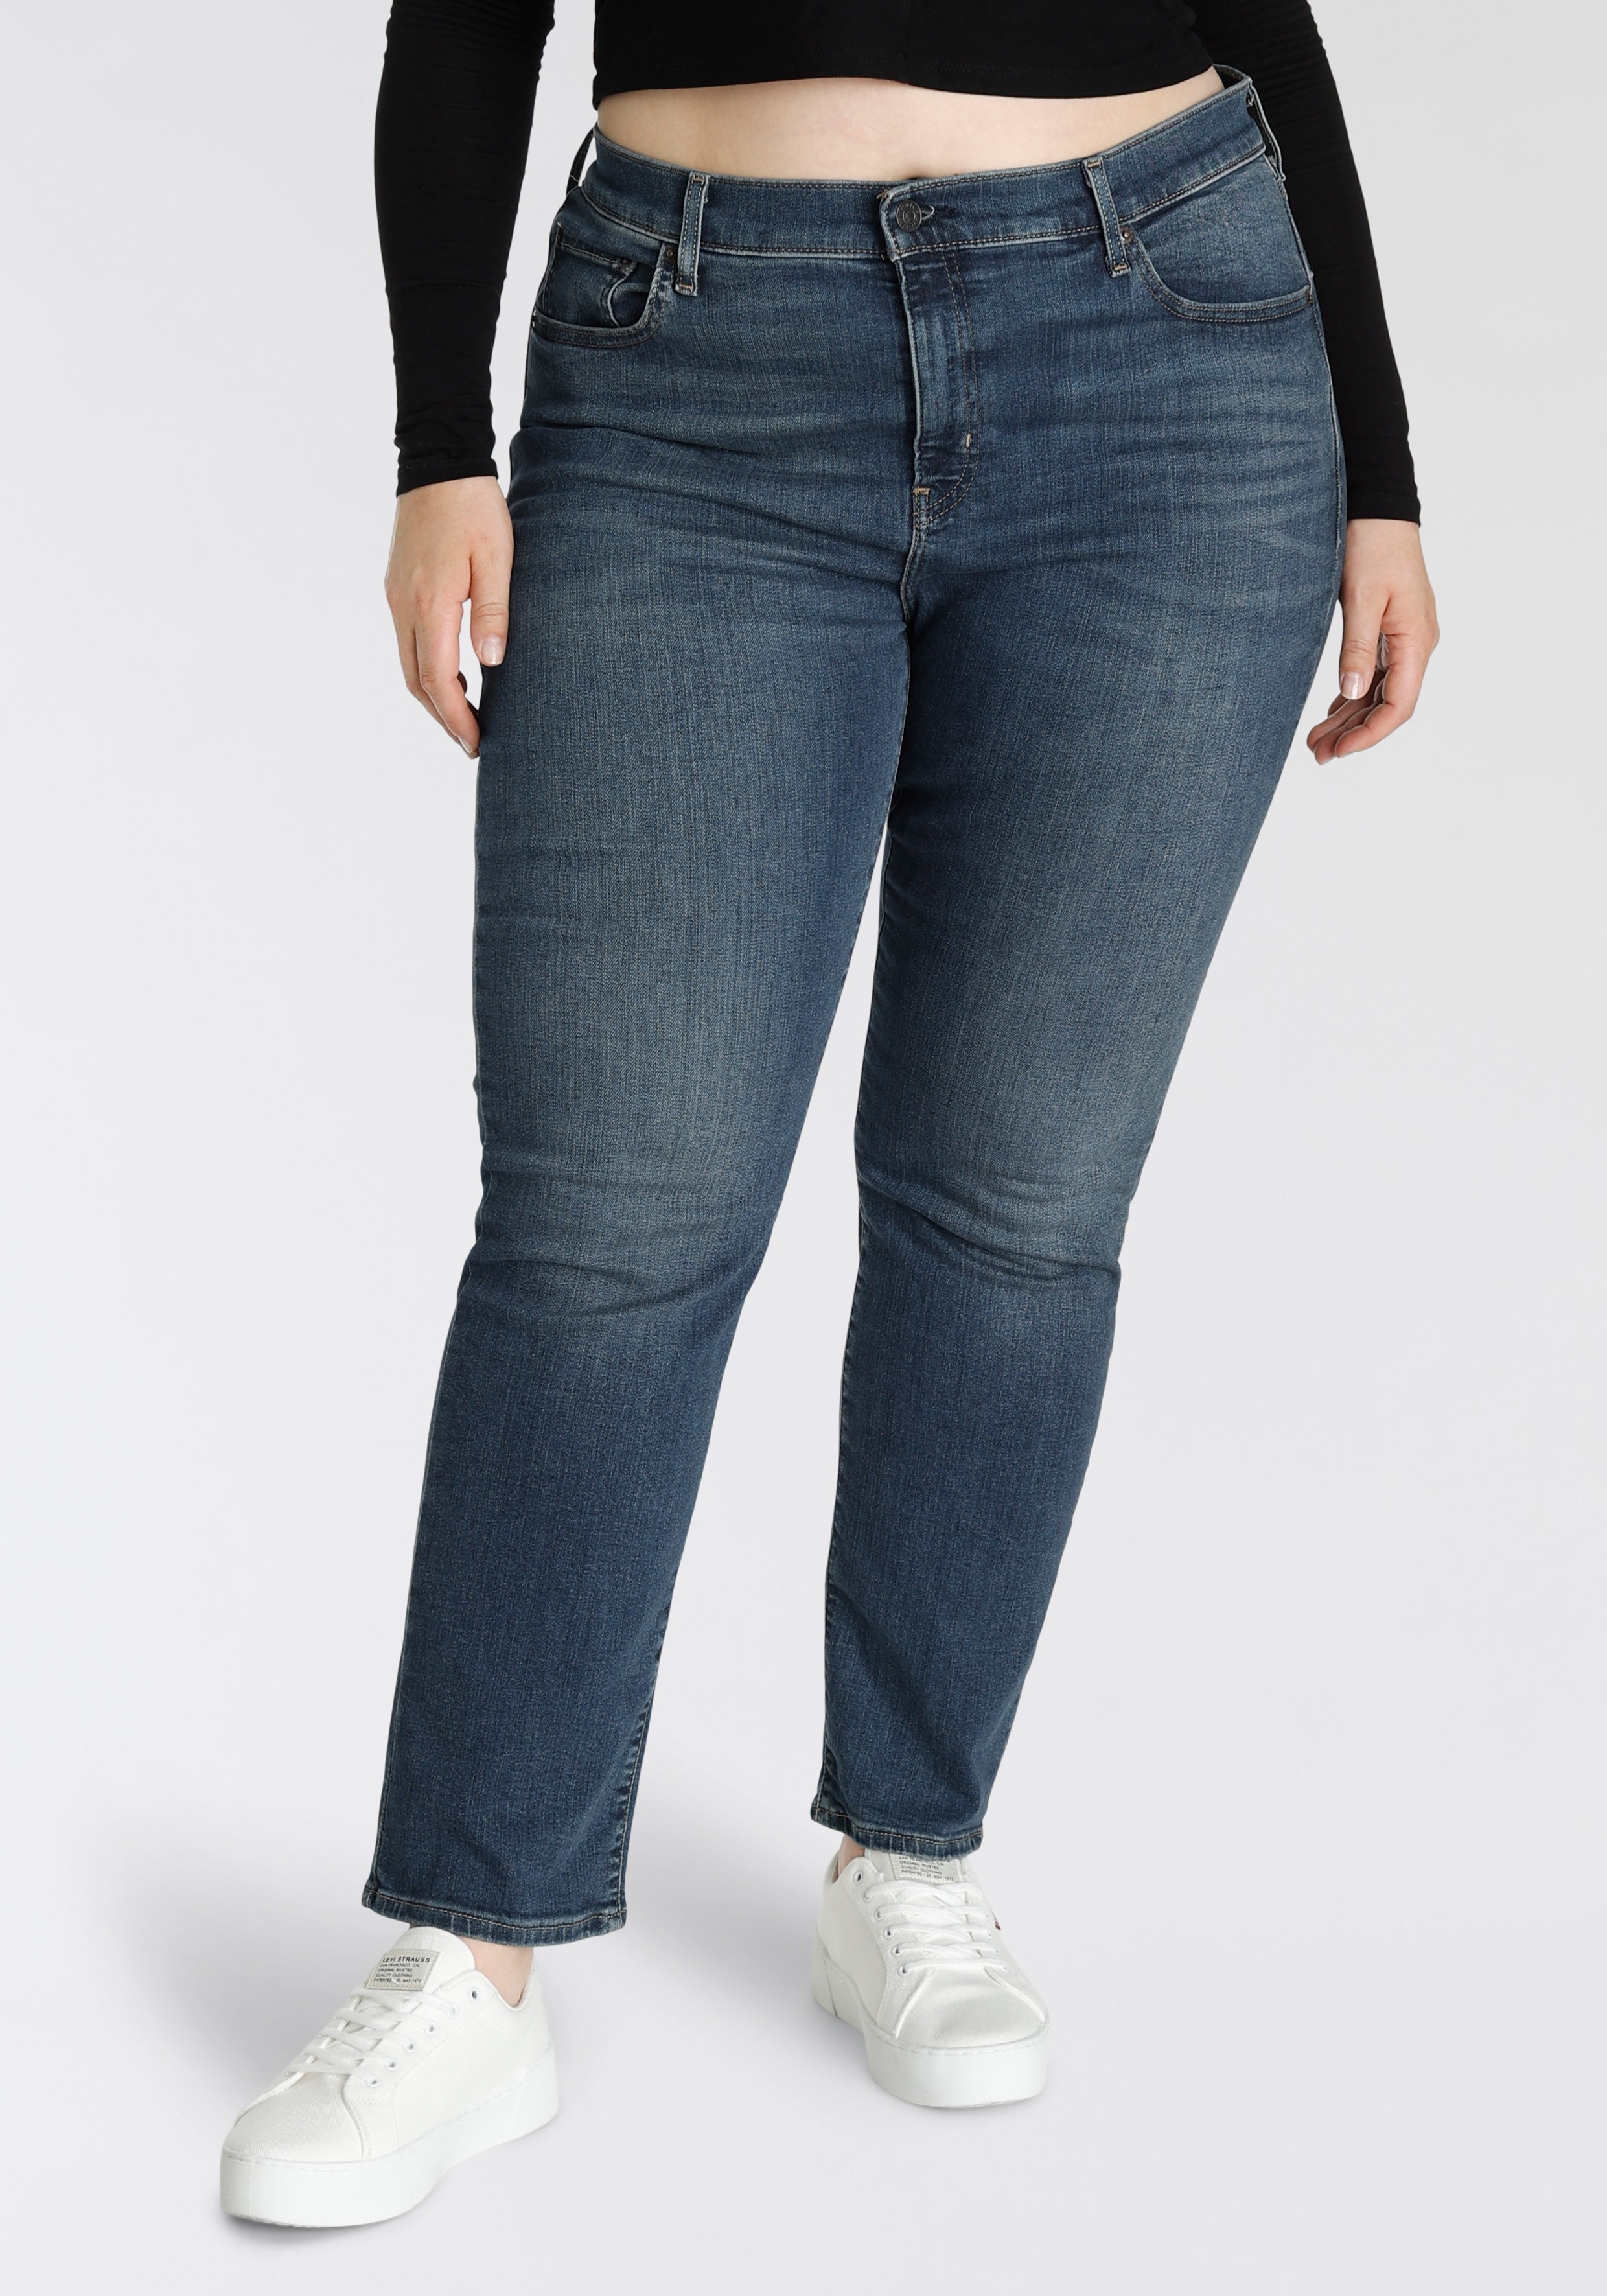 Straight-Jeans LEVI'S PLUS "724 PL HR STRAIGHT" Gr. 16 (46), Länge 32, blau (dark indigo worn in) Damen Jeans Gerade